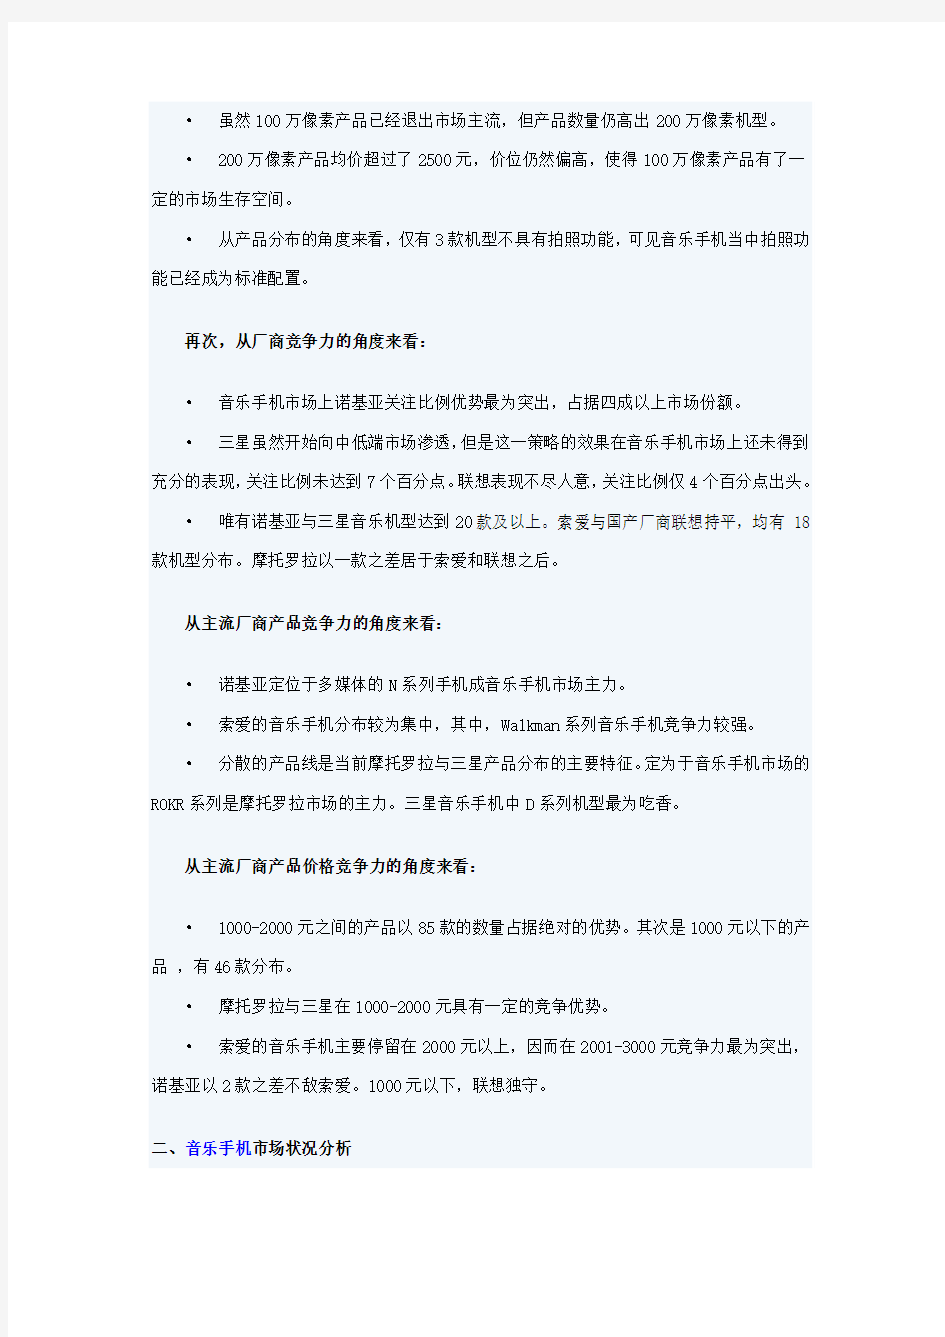 2007年中国音乐手机市场竞争力分析报告